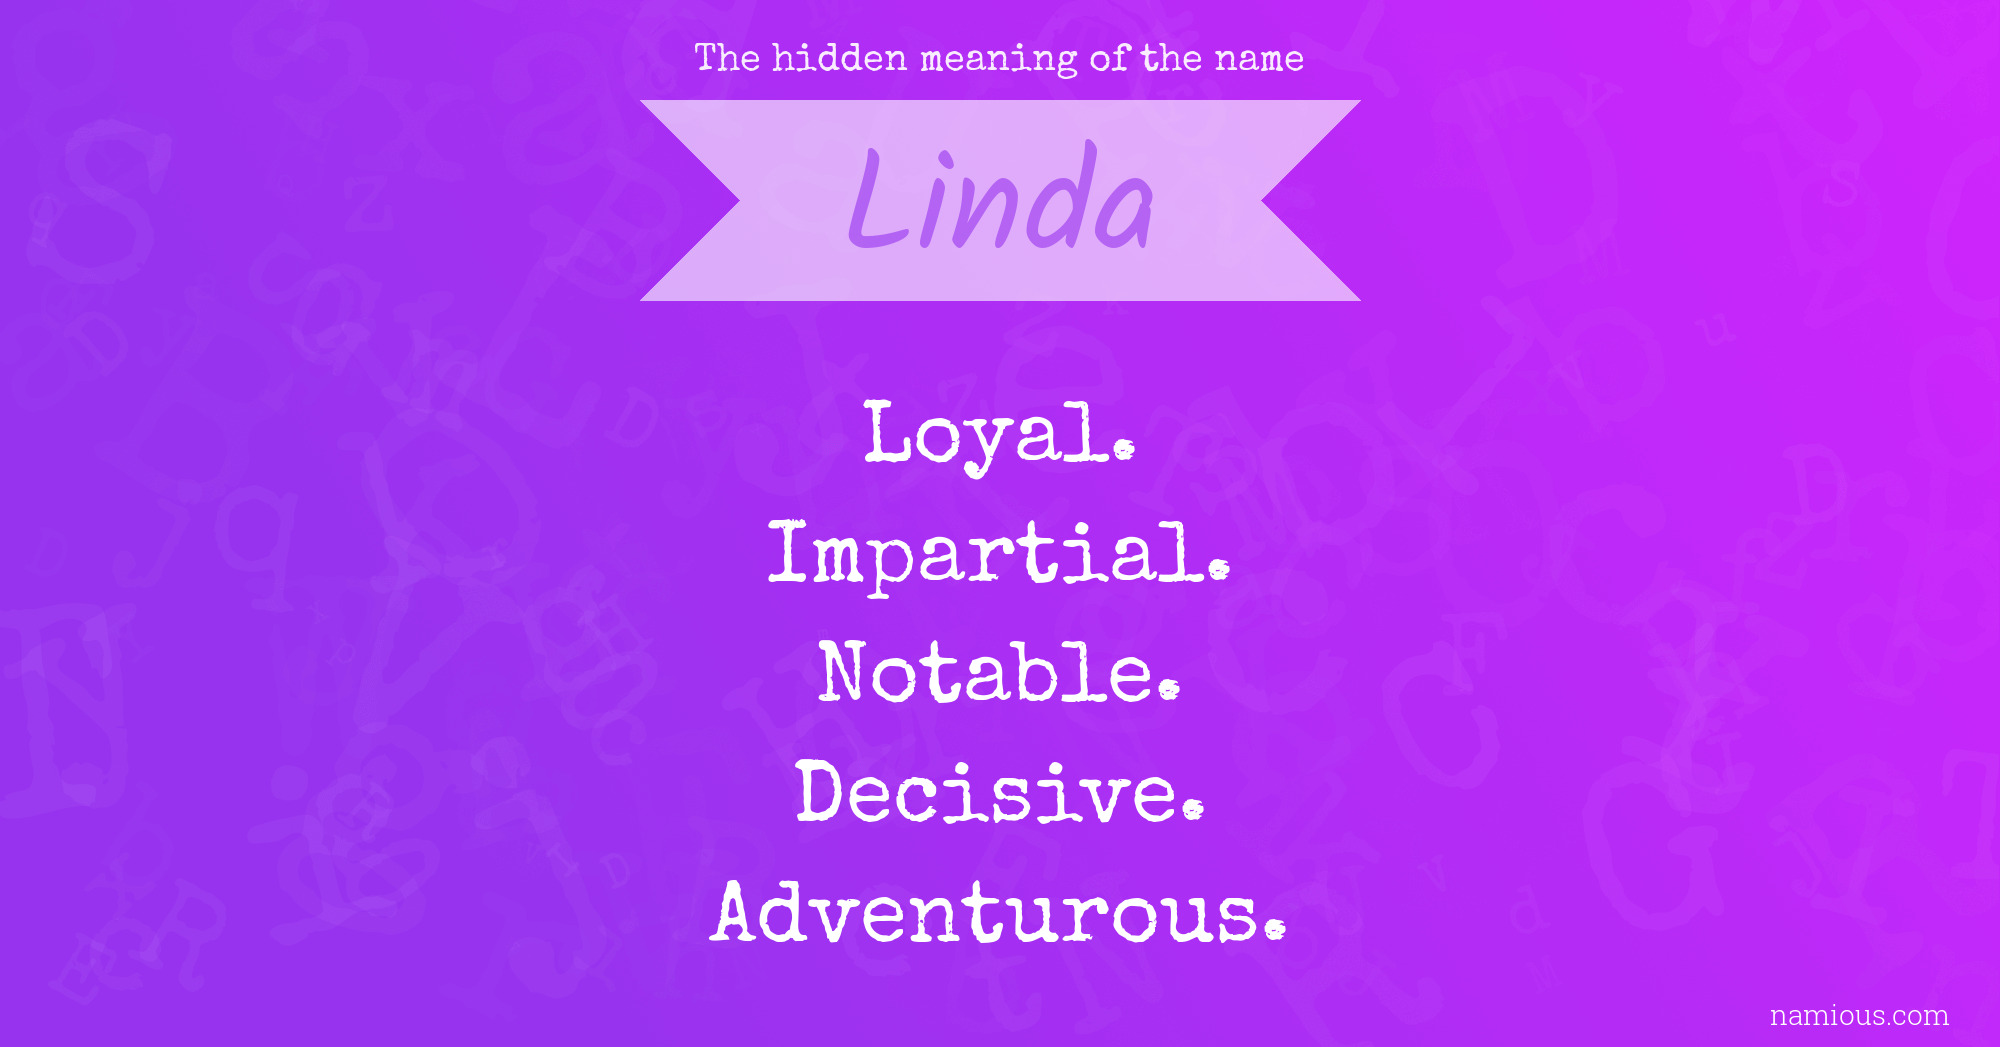 Linda Name 